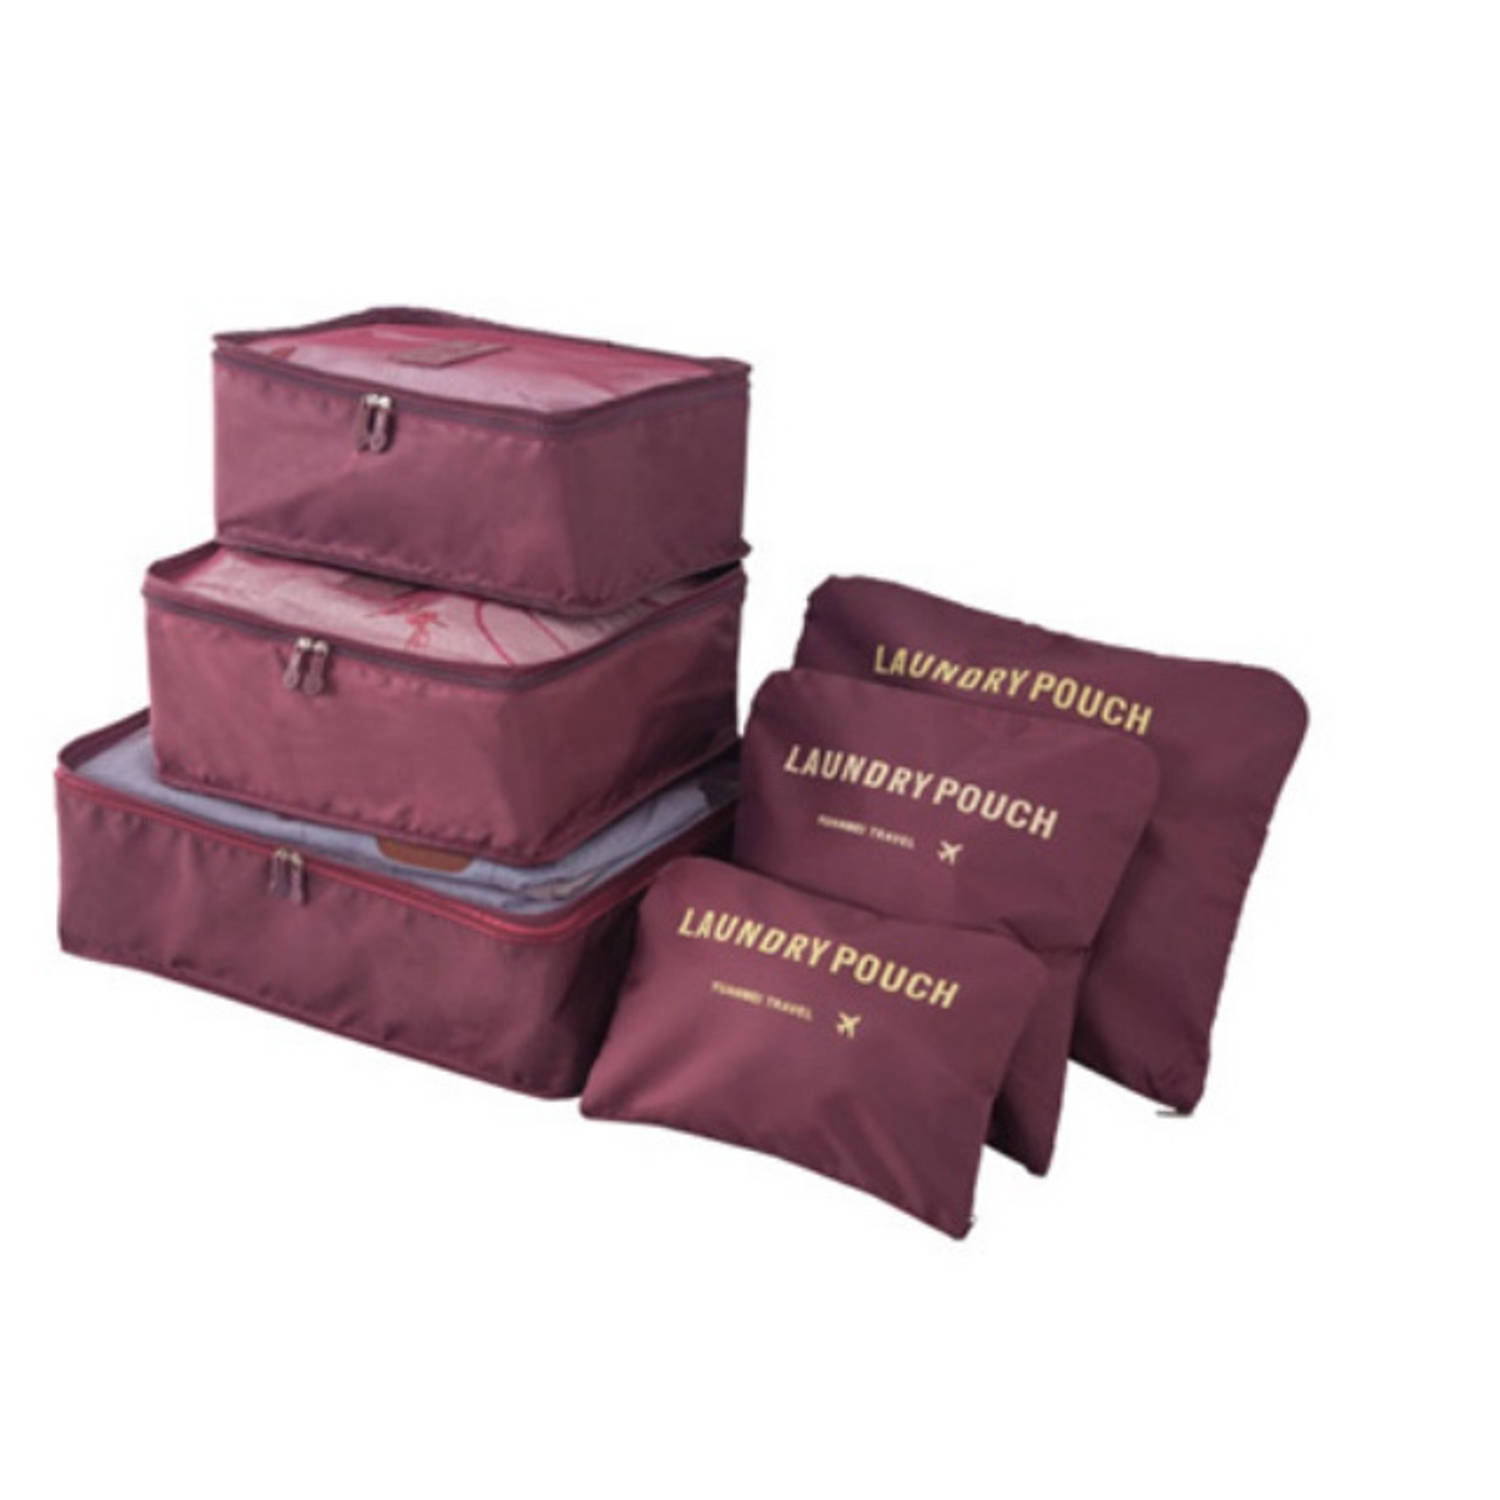 Packing Cubes - 6 stuks - Koffer Organiser - Wijnrood - Je koffer georganiseerd ingepakt